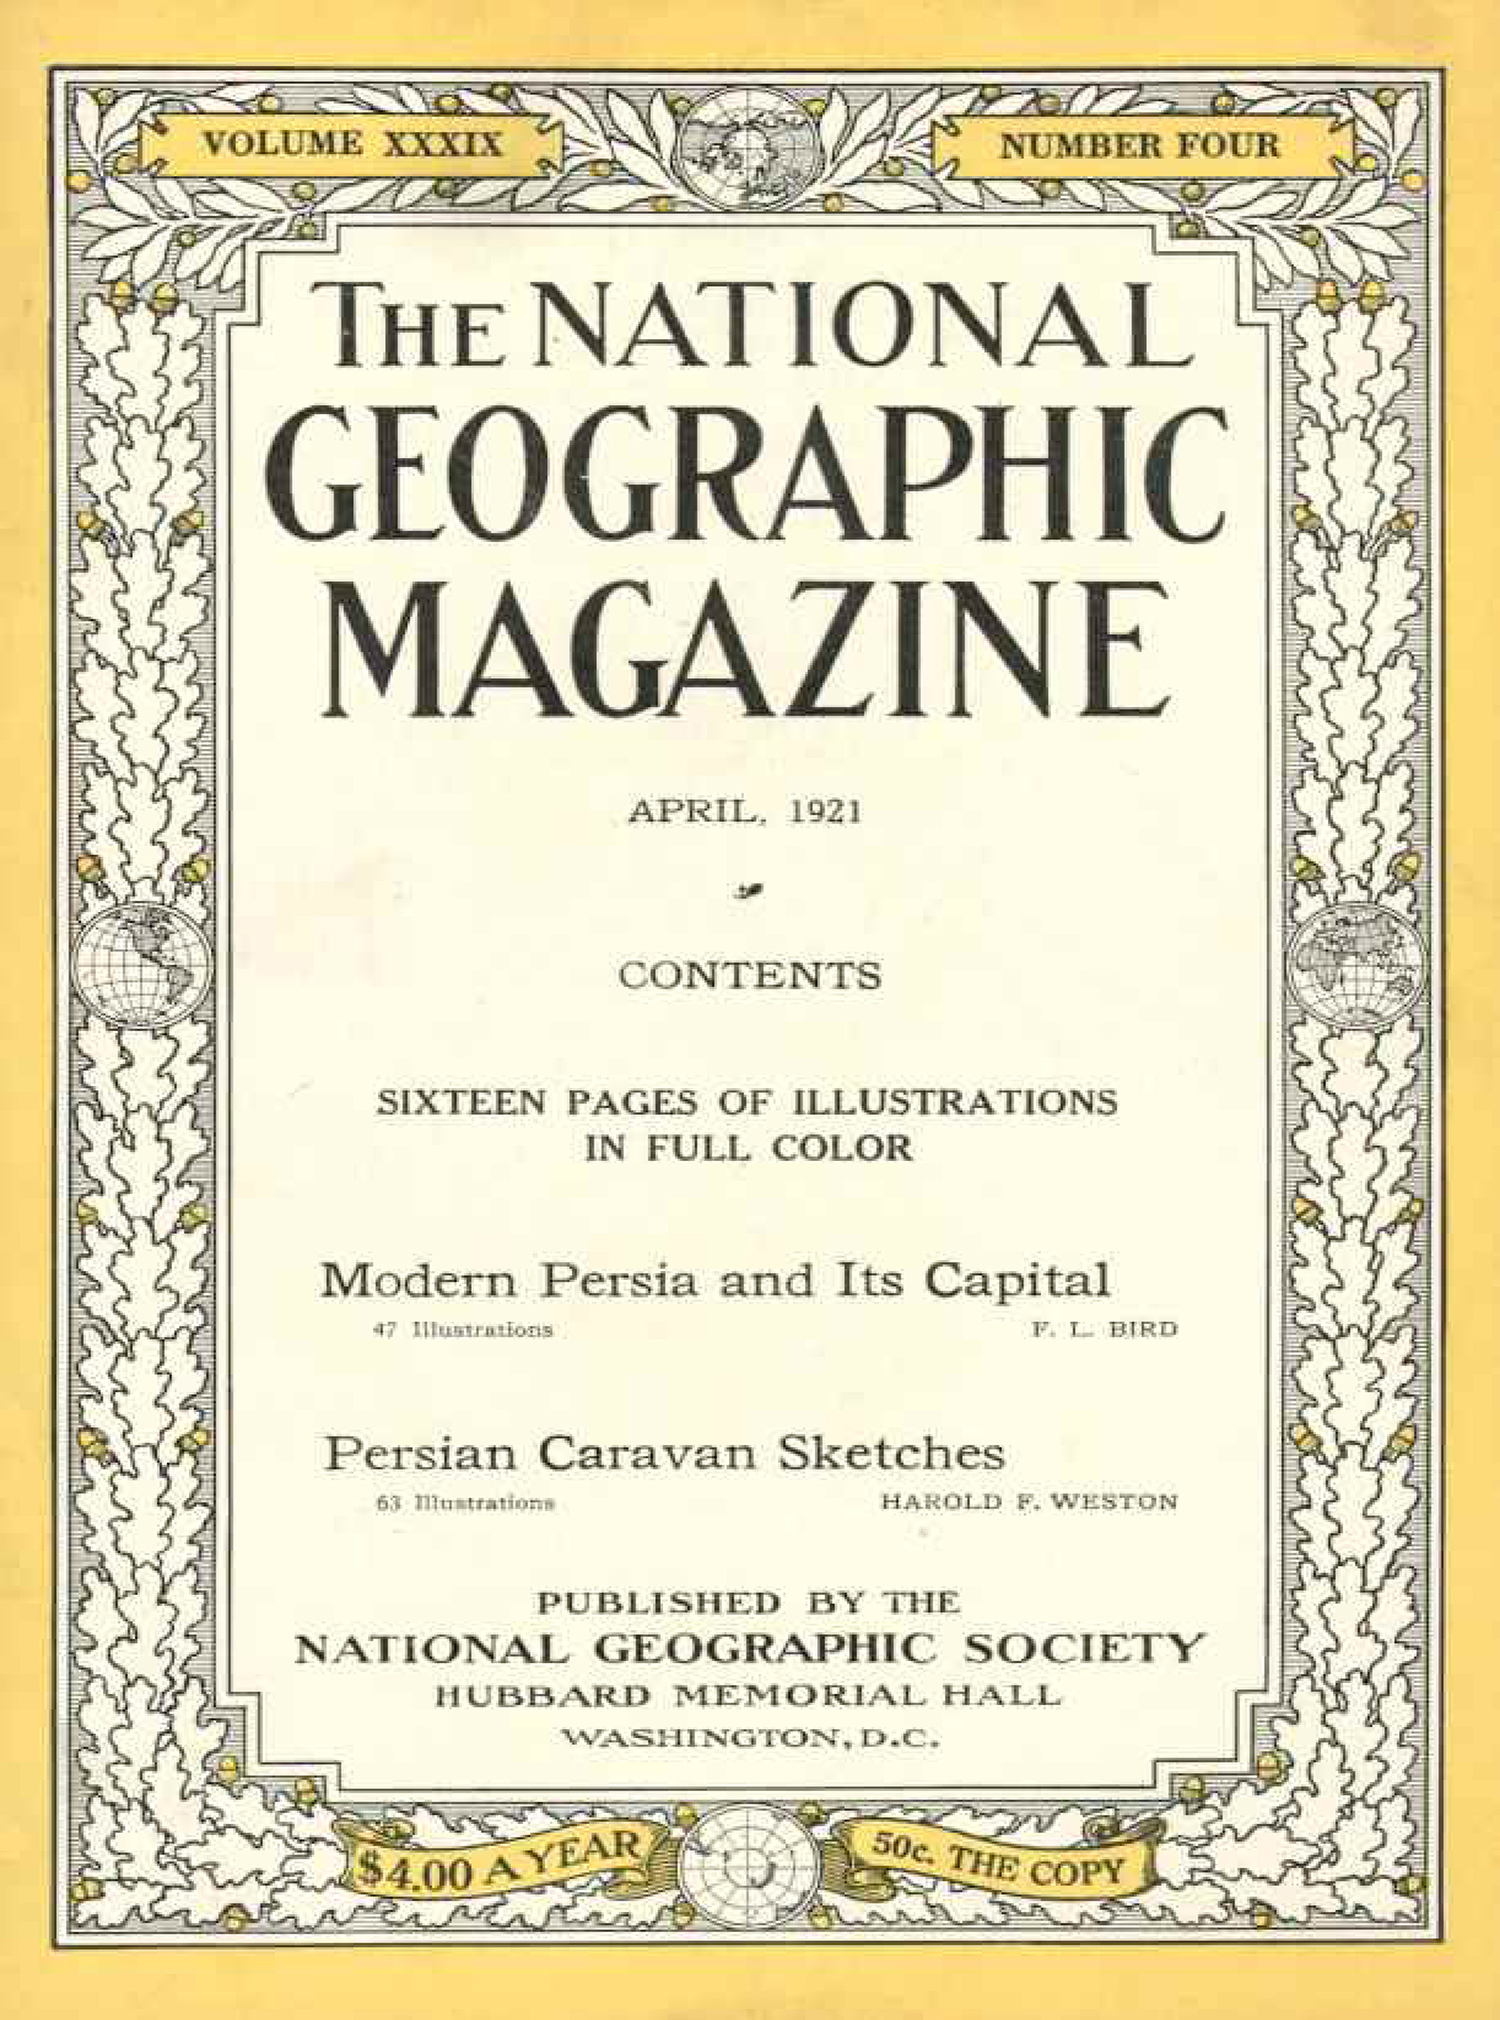 تصاویر مجله National Geographic از ایران در سال 1921